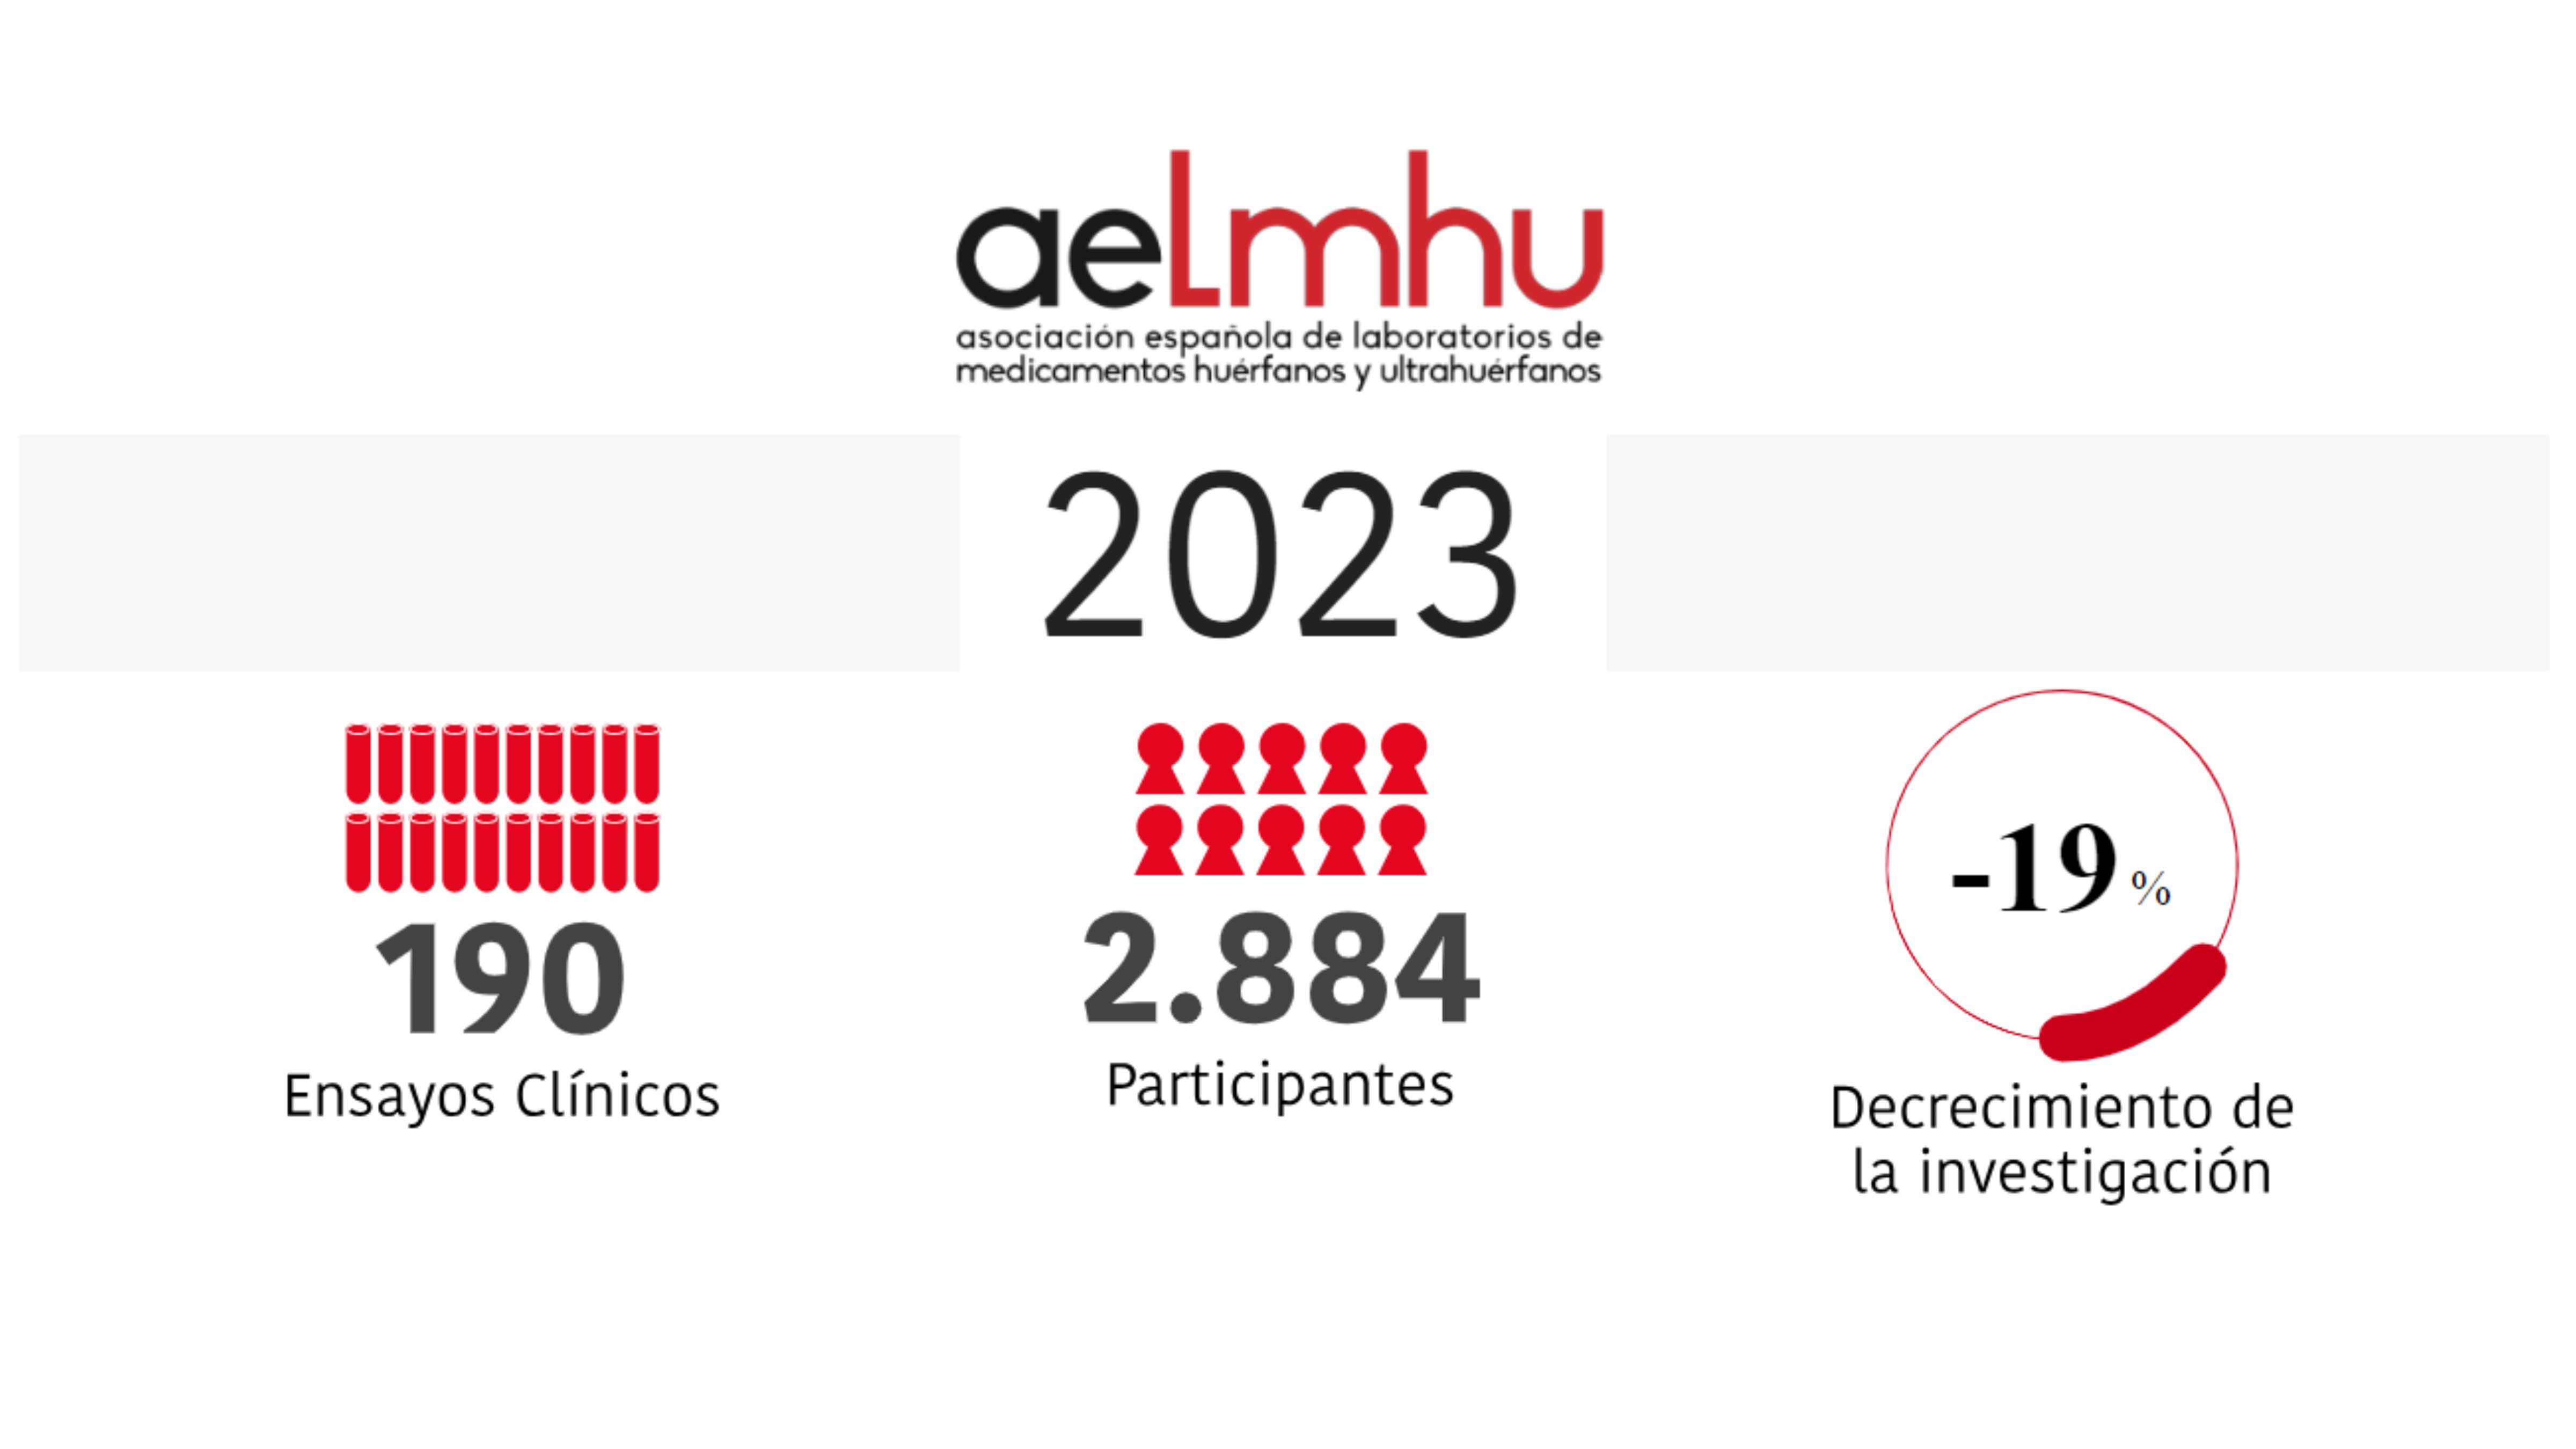 Imagen con el logo de AELMHU y datos principales del informe.